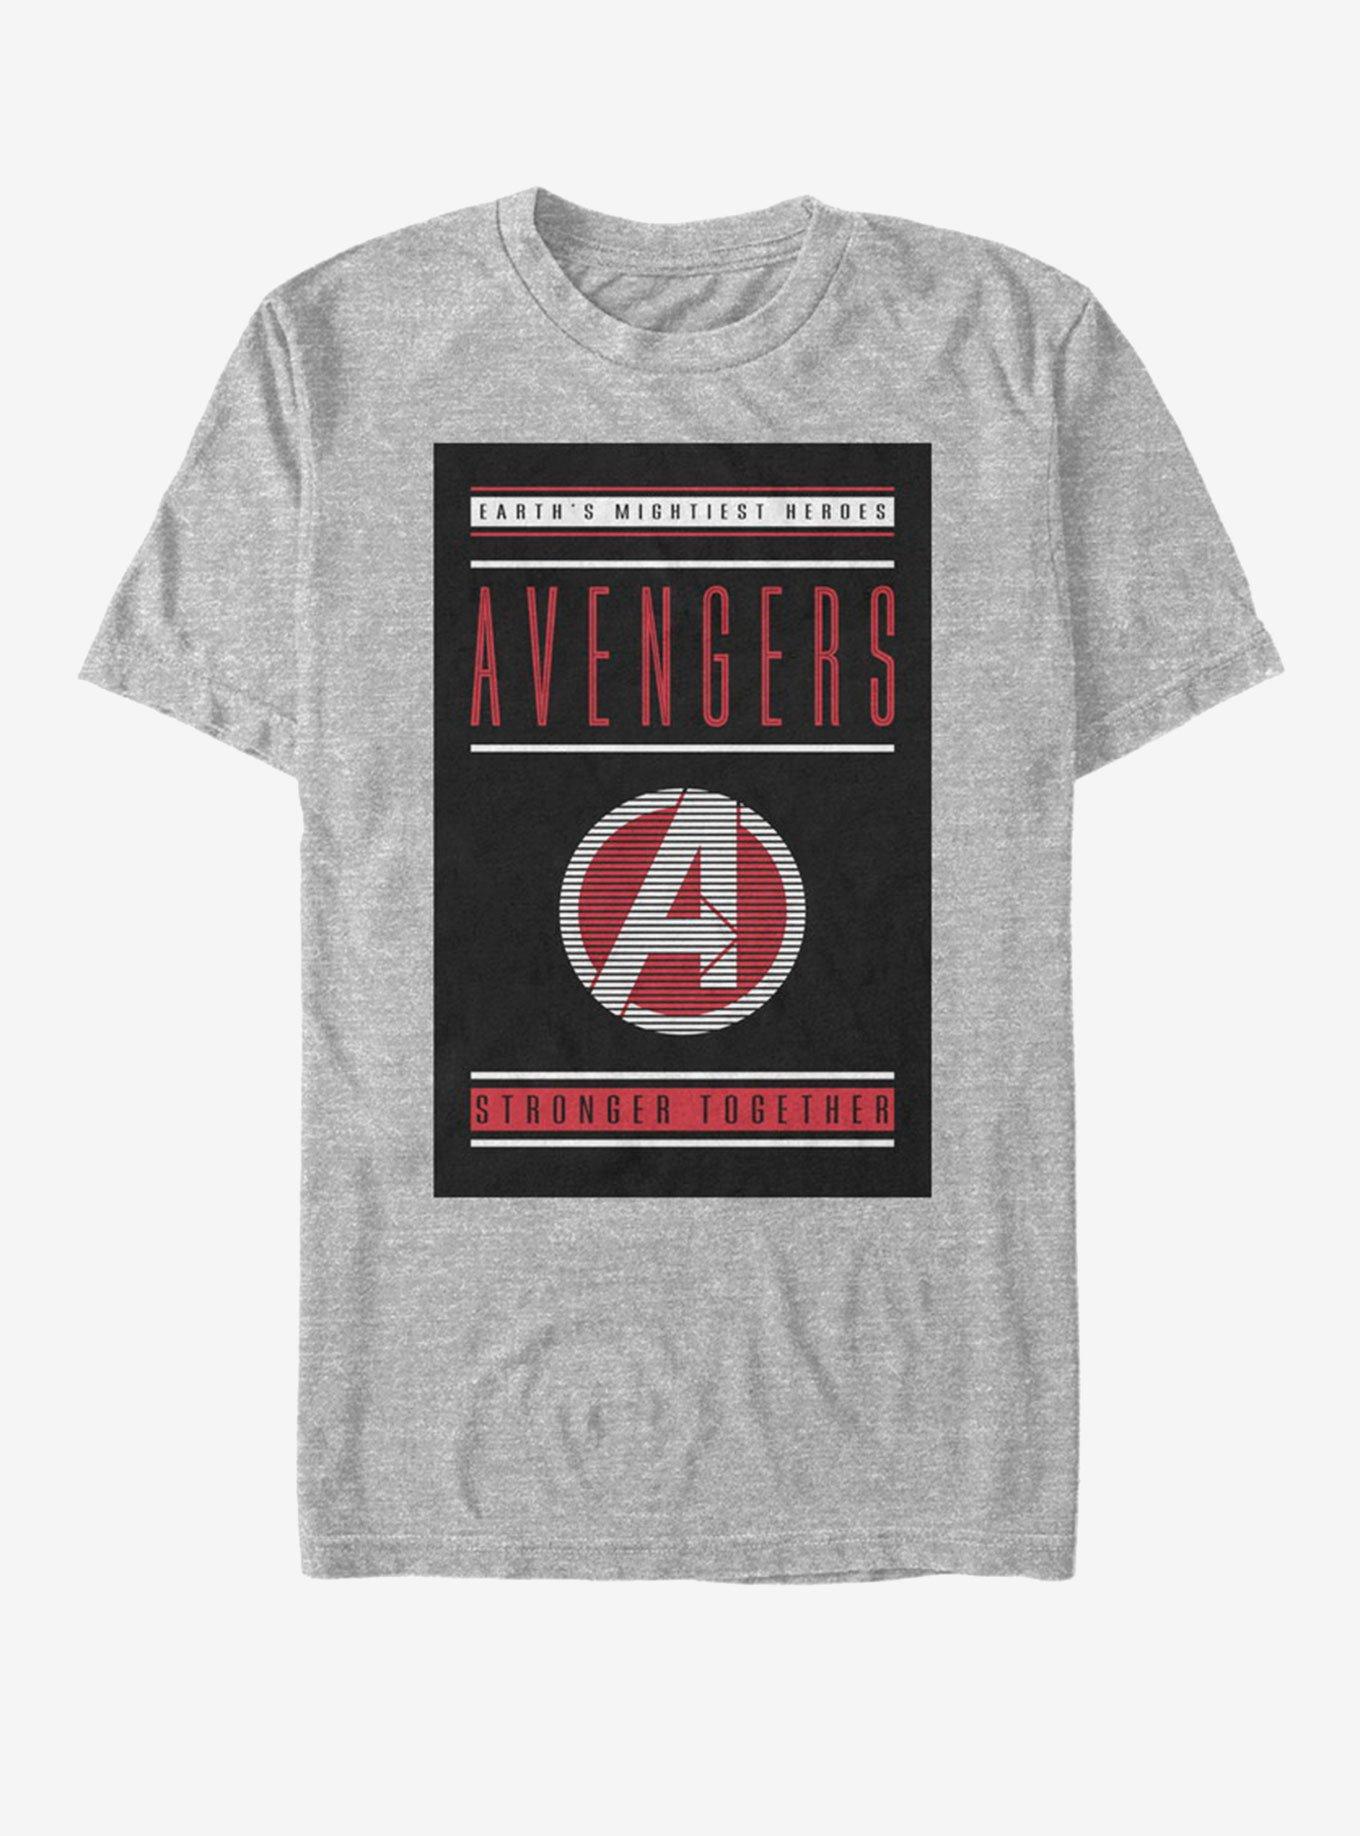 Marvel Avengers: Endgame Stronger Together T-Shirt